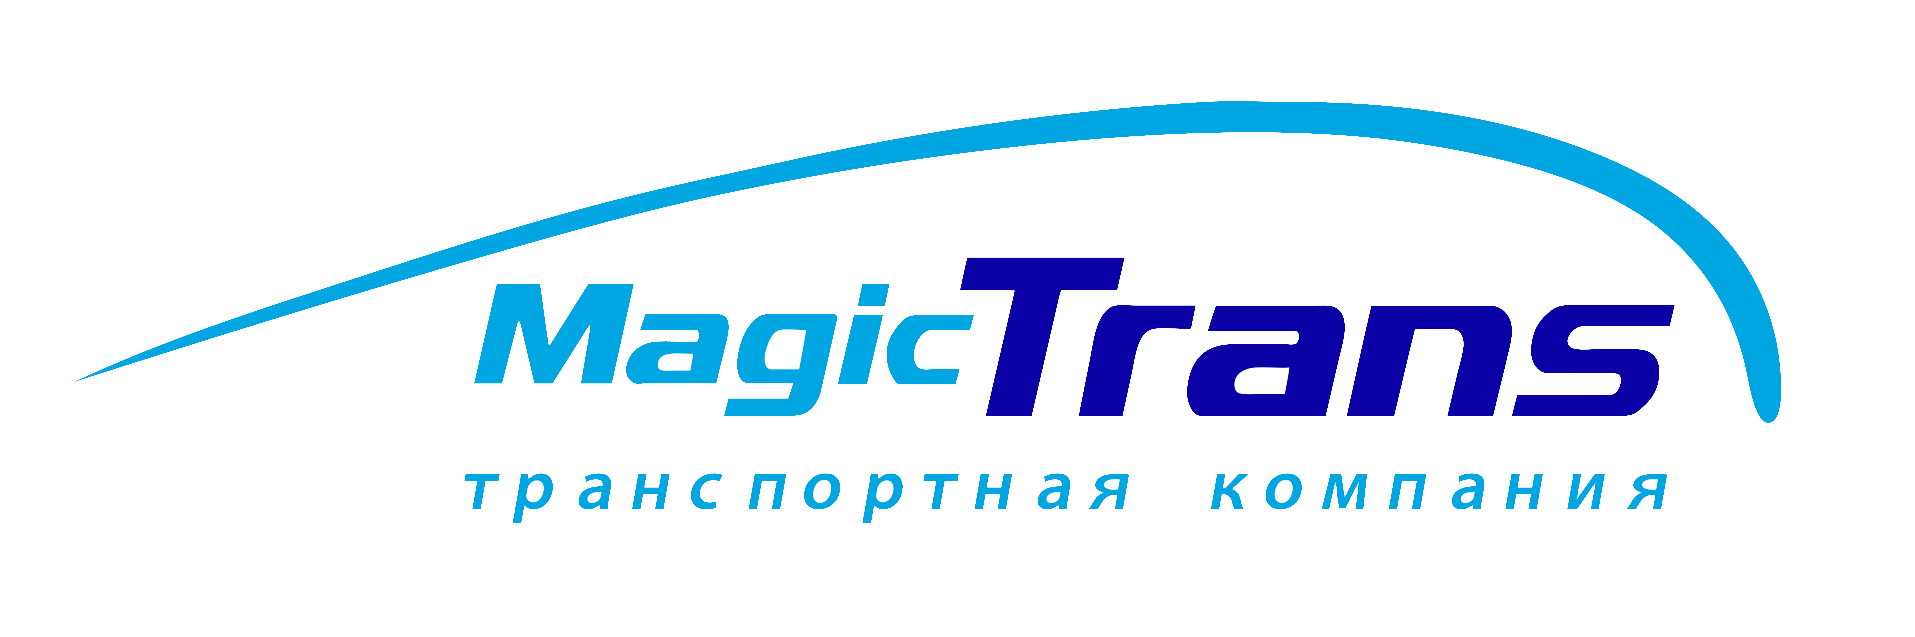 Компания Мейджик транс. Magic Trans логотип. Эмблема транспортной компании. ТК «Мейджик транс» лого. Мейджик краснодар